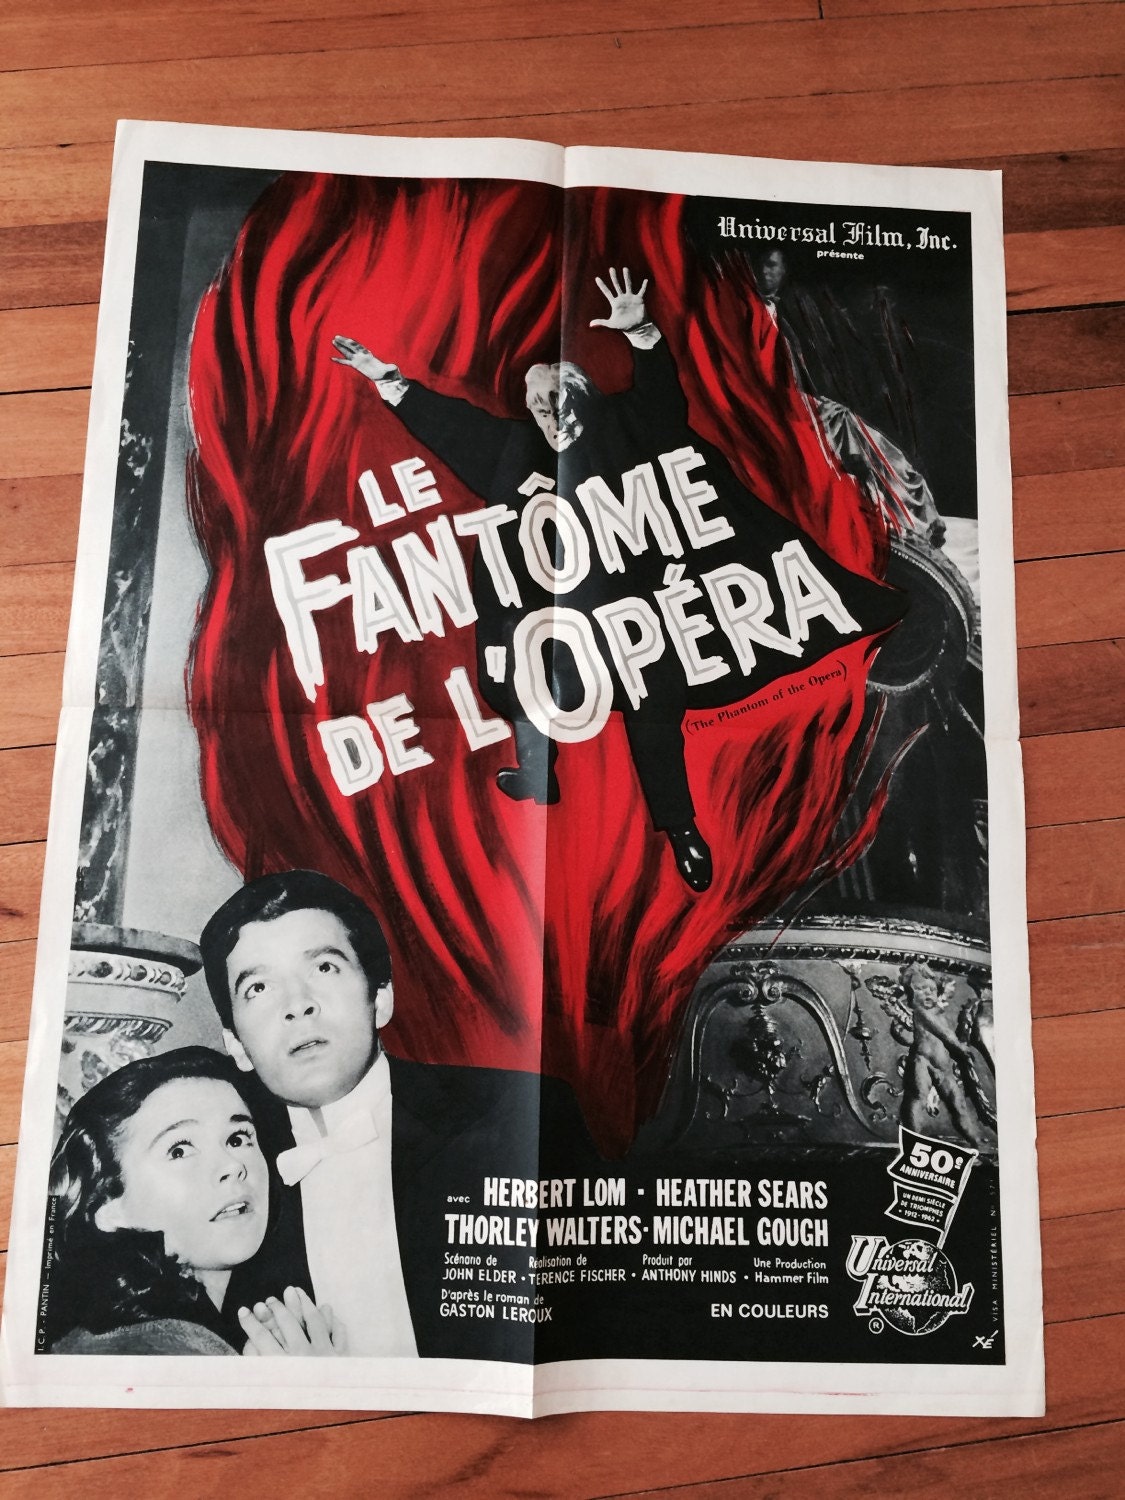 Le Fantome de l'Opera Original 1962 French movie poster.